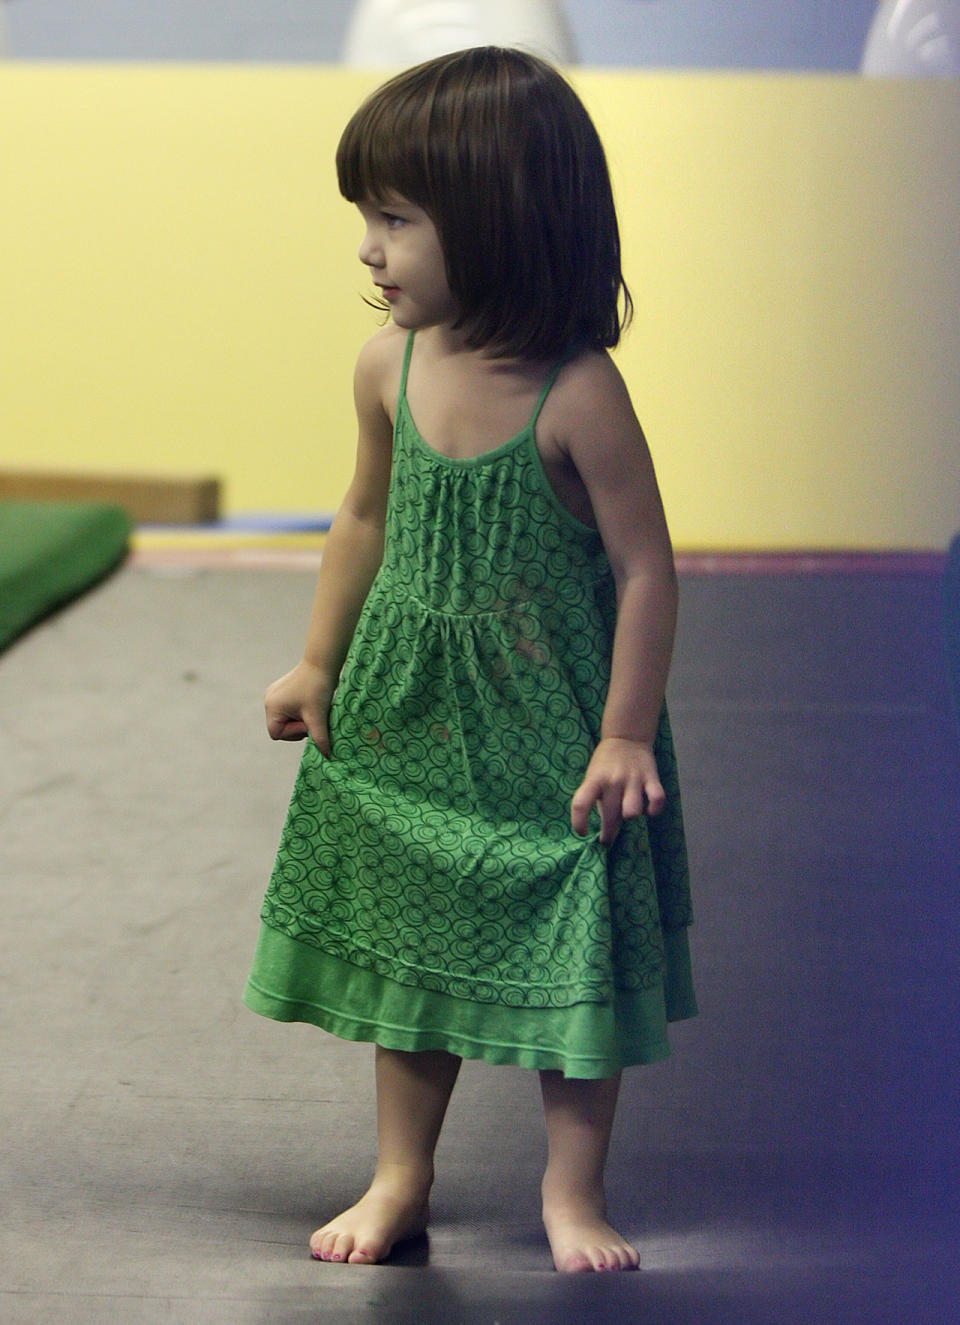 Hier kann sie ja schon laufen! 2008 wurde Suri Cruise in einem Fitnessstudio in Chelsea Piers abgelichtet. Das grüne Kleidchen lässt schon erahnen, dass eine Fashion-Liebhaberin in ihr steckt, oder? (Bild-Copyright: Jackson Lee/TomMeinelt/Splash News)